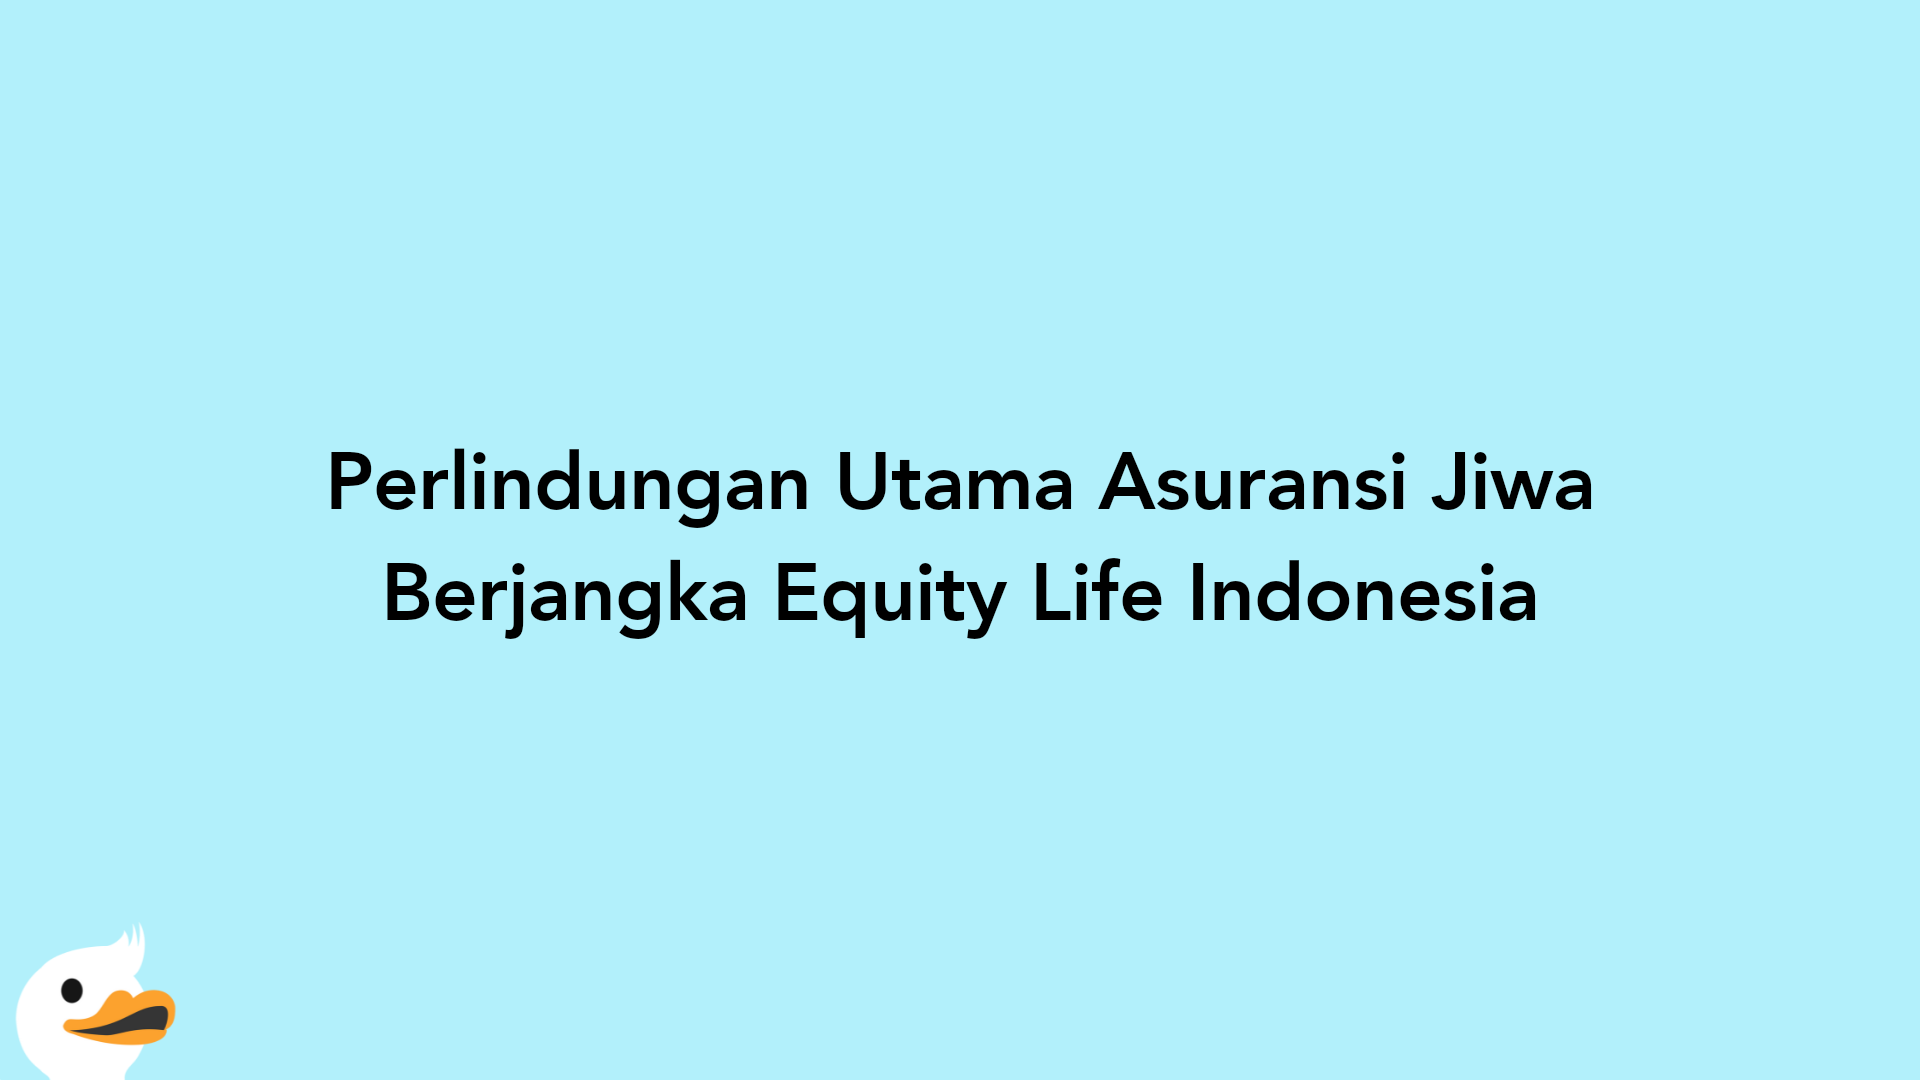 Perlindungan Utama Asuransi Jiwa Berjangka Equity Life Indonesia